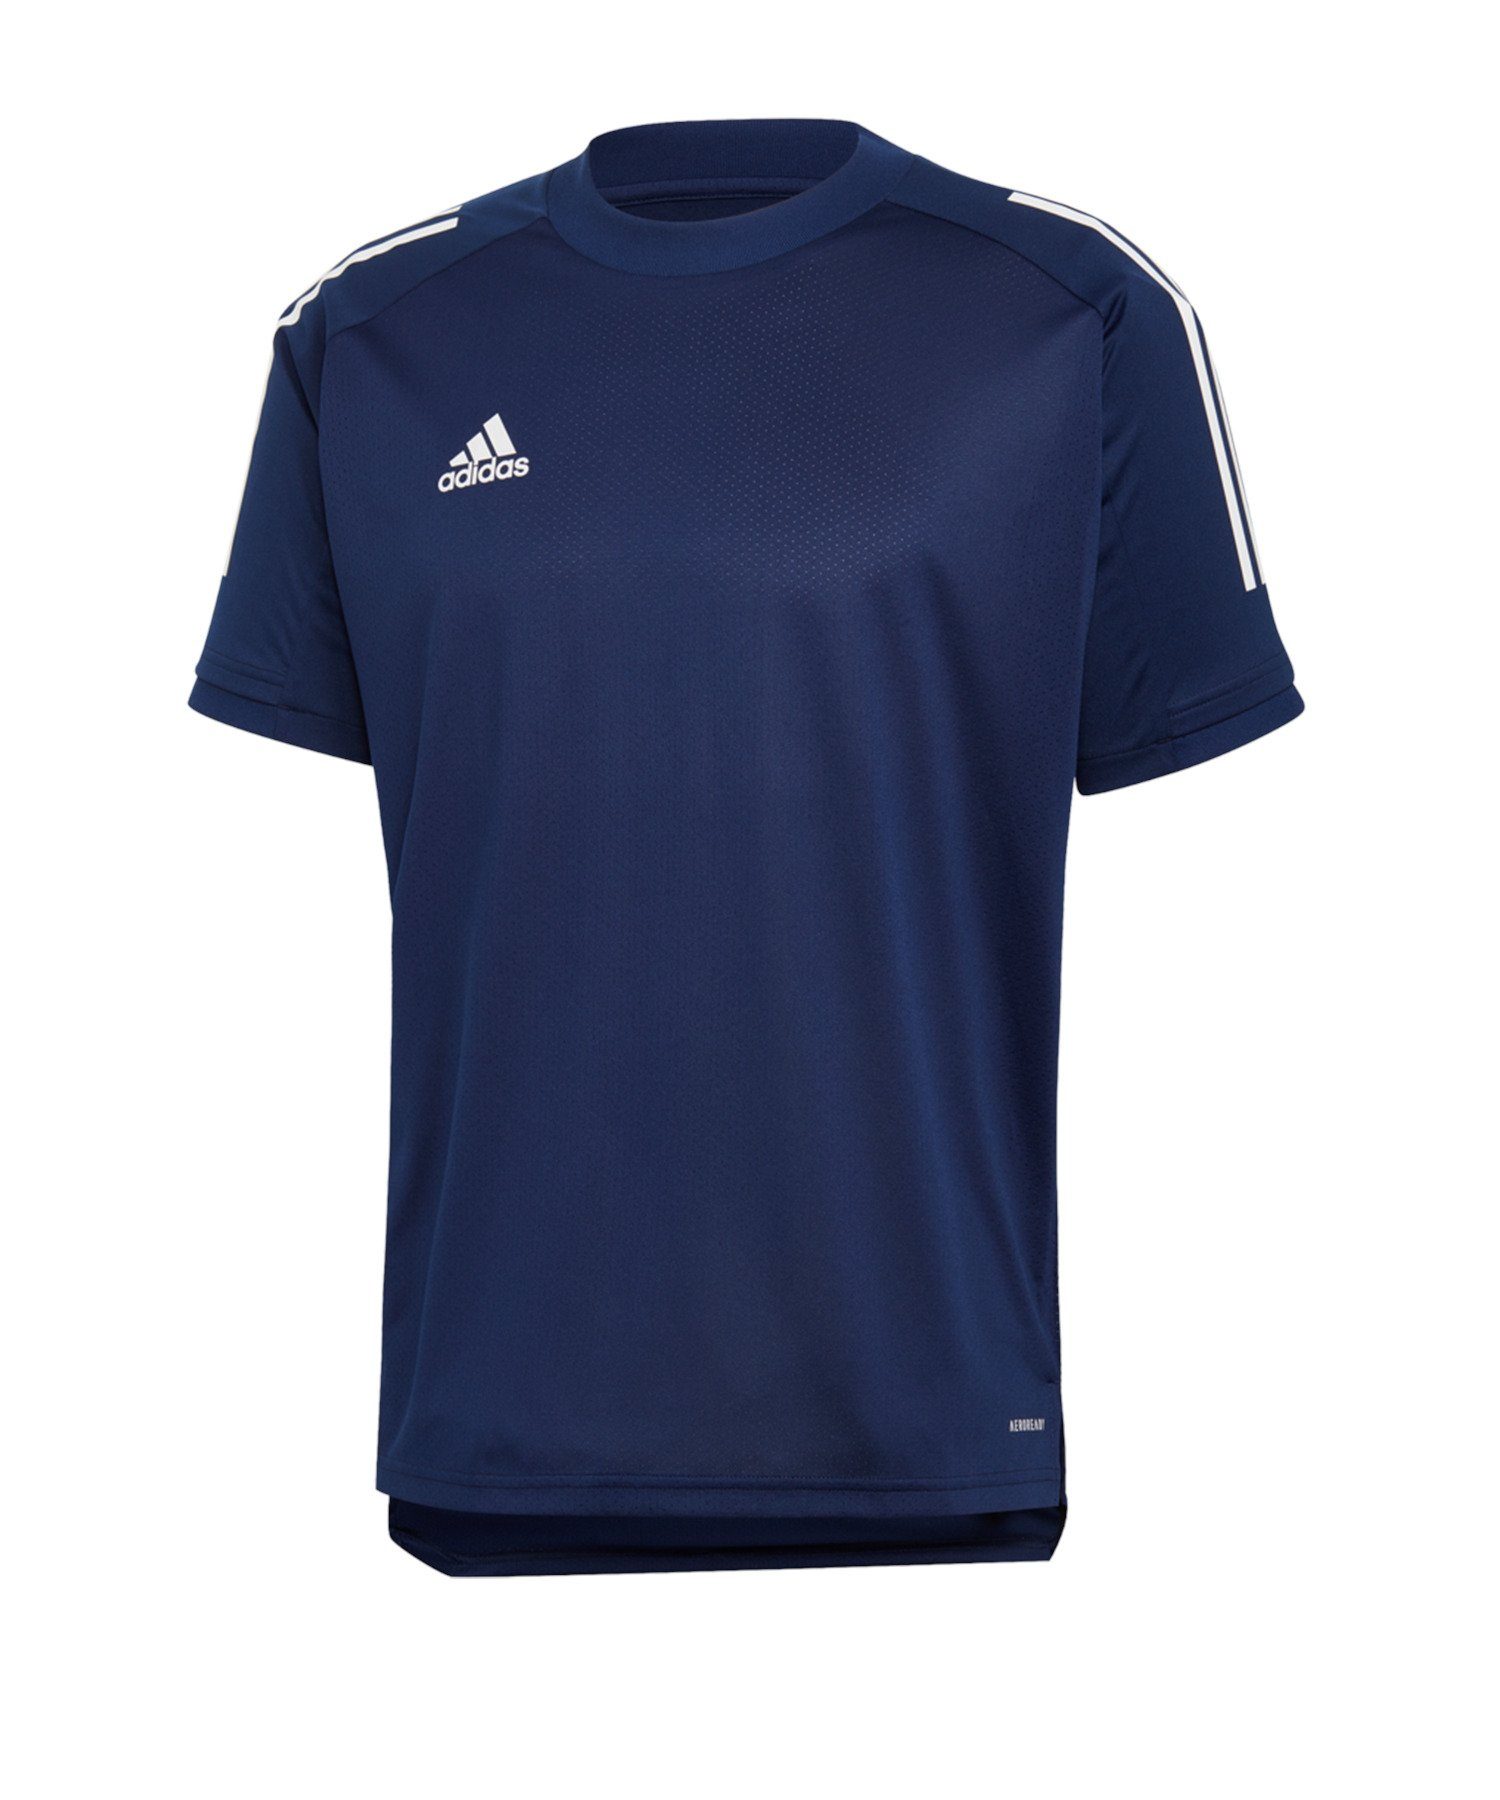 TR adidas kurzarm Performance Shirt blau Condivo default 20 T-Shirt